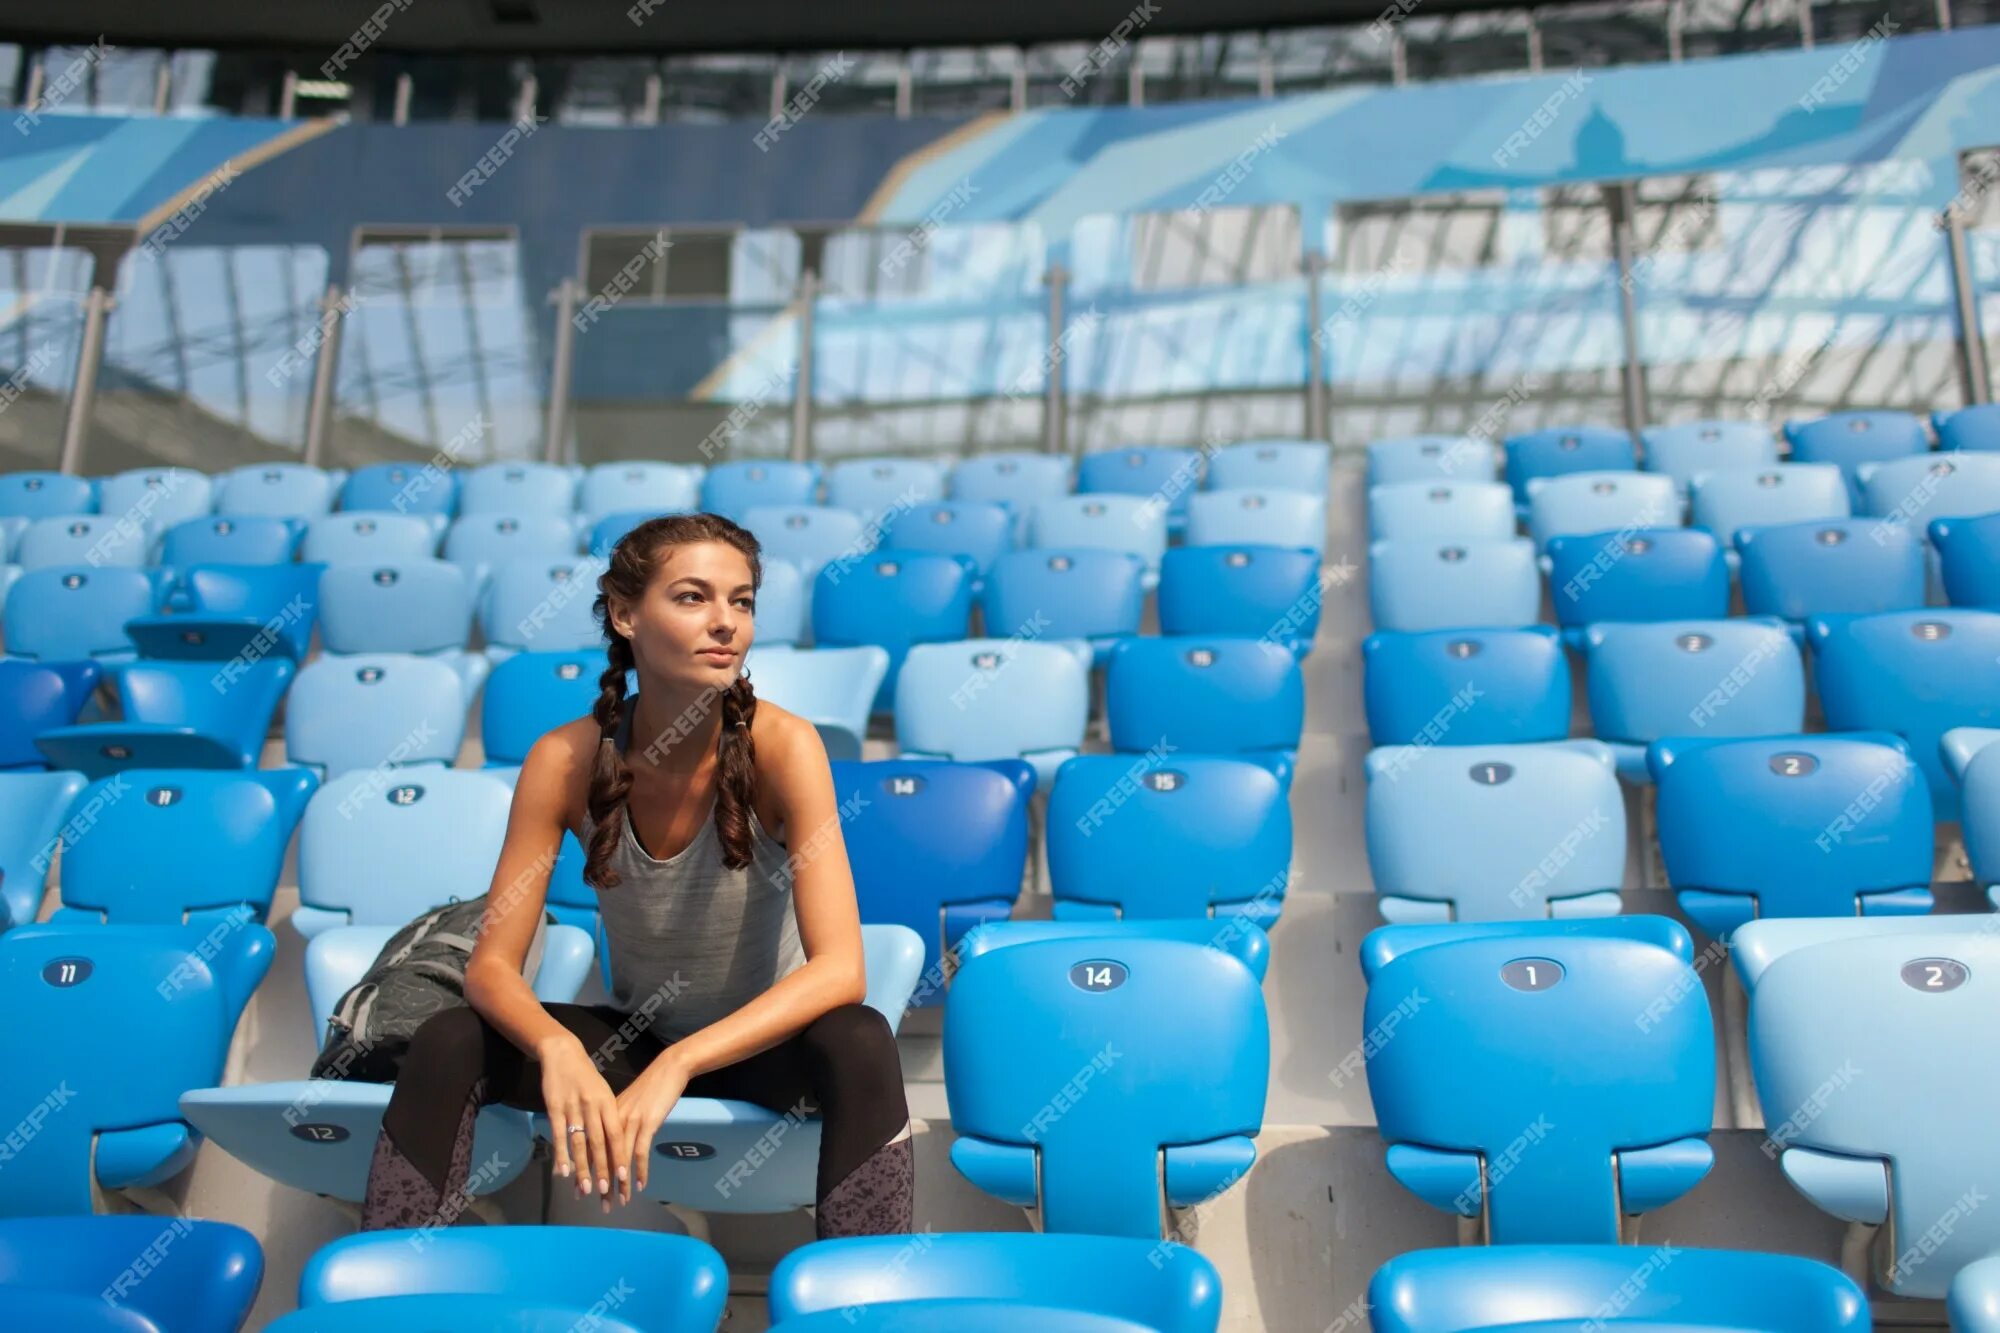 Женщины на стадионе. Сиденья на стадионе. Сидят на стадионе. Фотосессия девушек на стадионе сидя. Женщина на стадионе